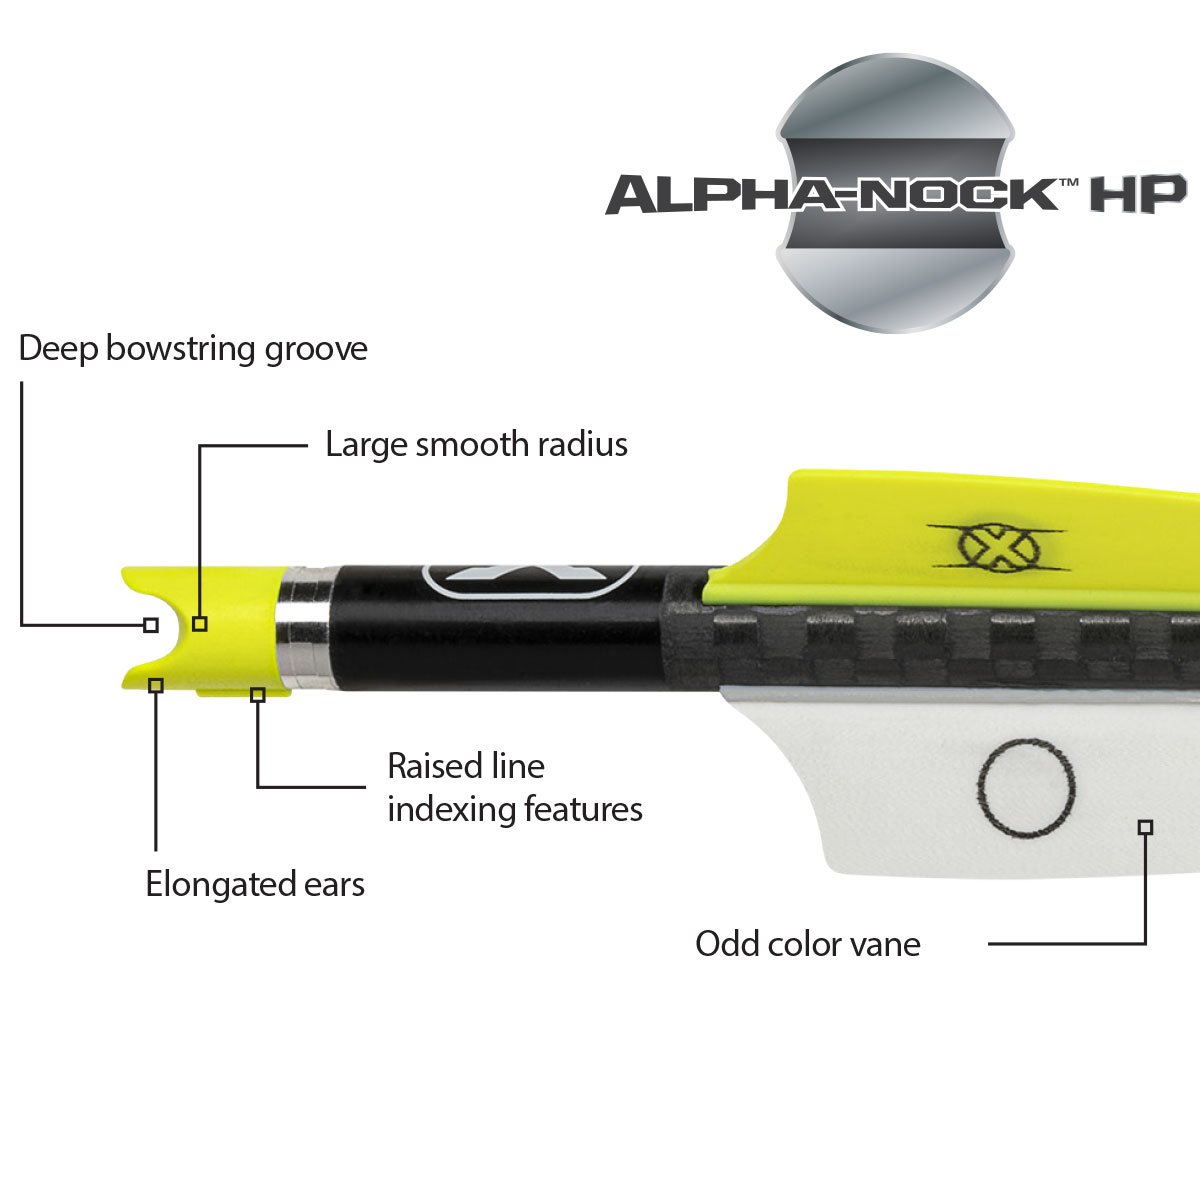 Alpha-Nock HP